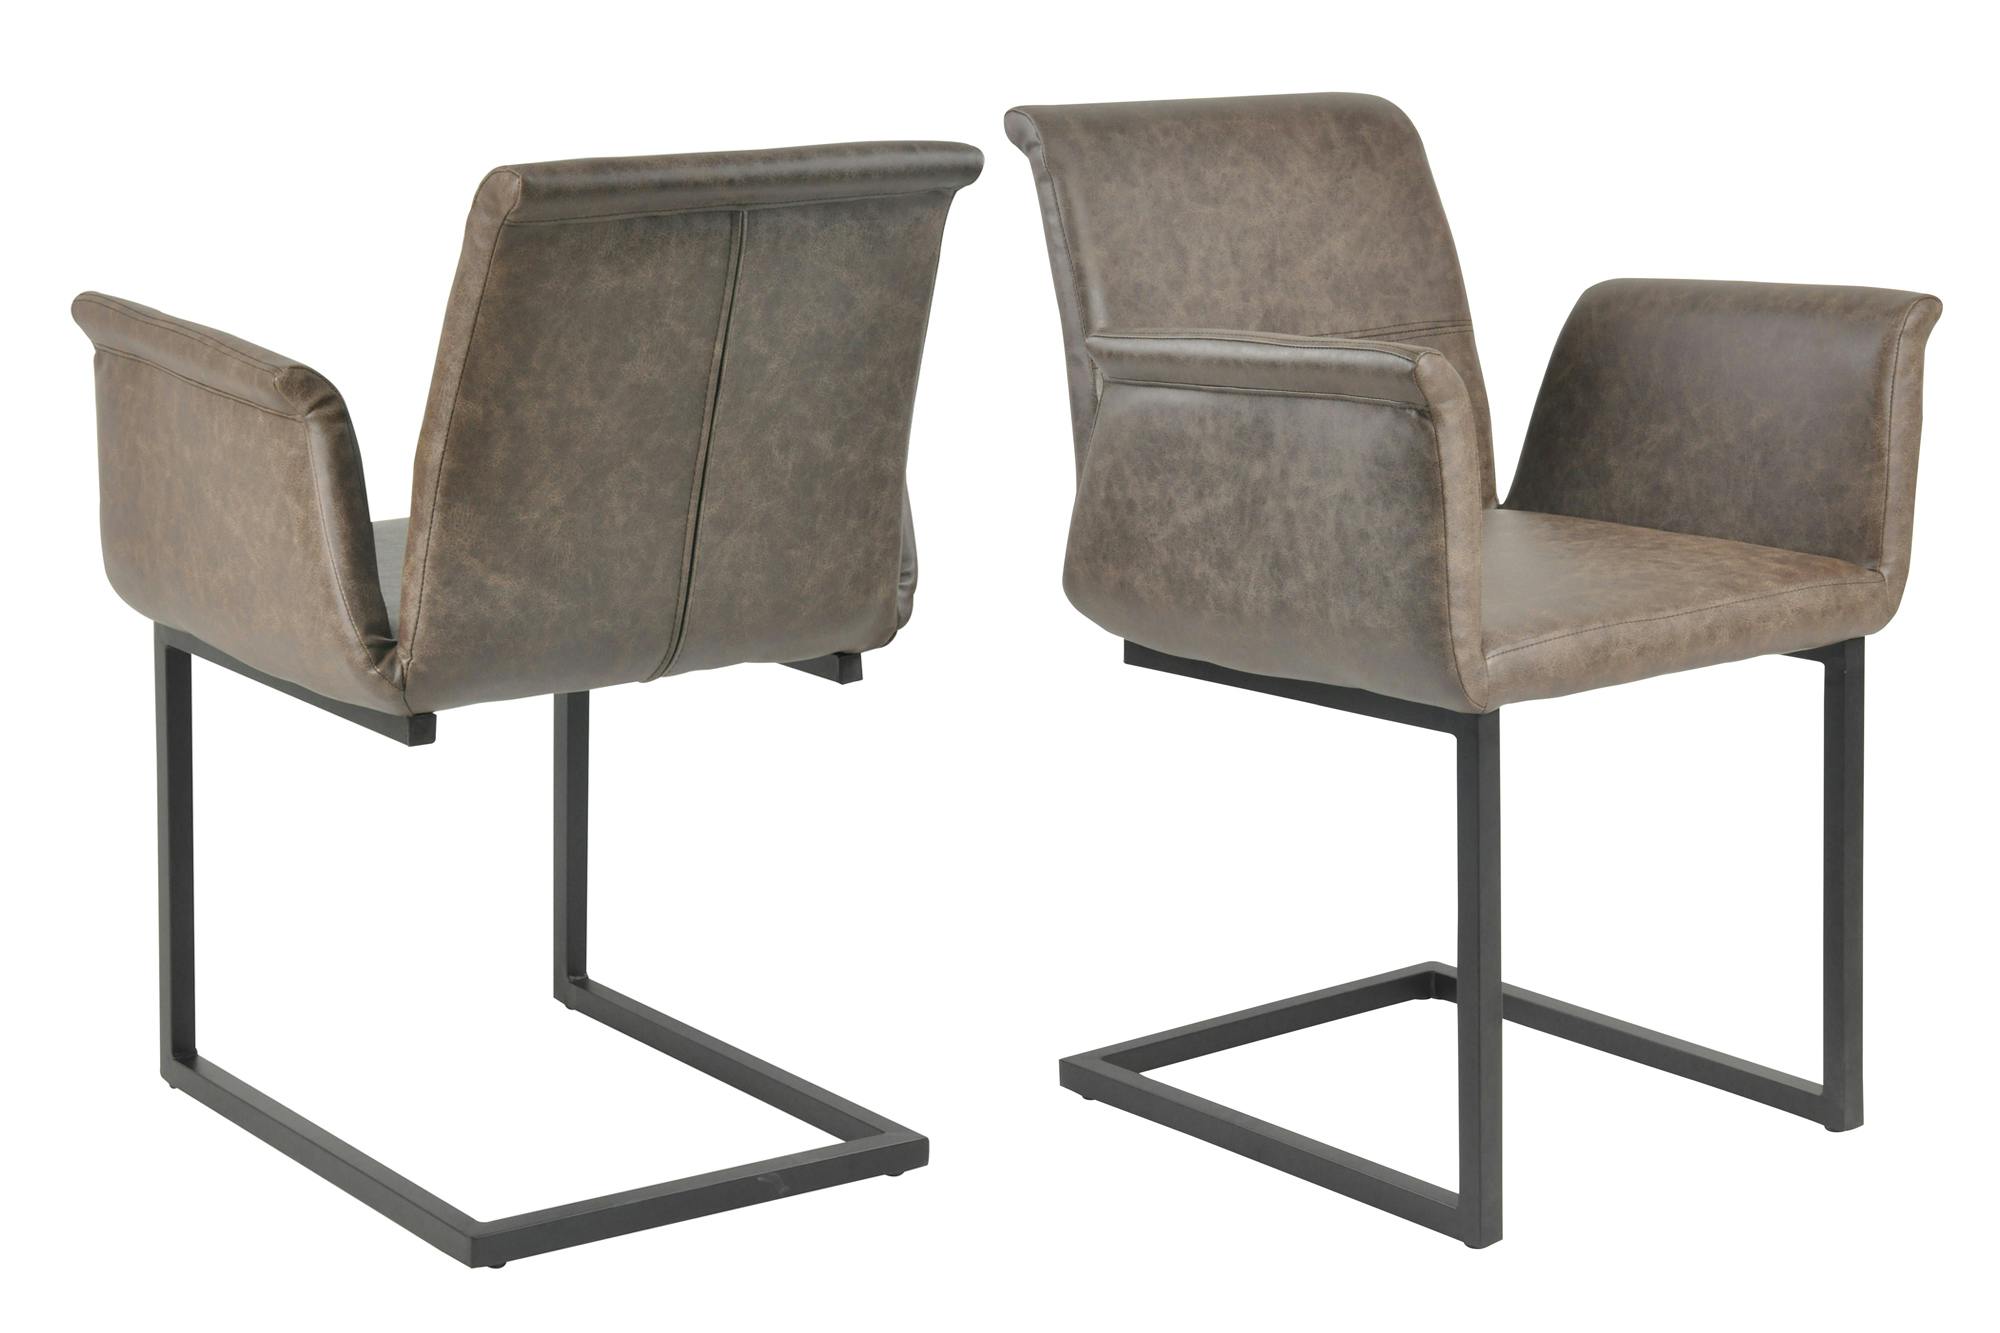 SalesFever Freischwinger Stuhl 2er Set | Bezug Kunstleder | Gestell Metall  schwarz lackiert | geschwungene Arm- und Rückenlehne | dunkelbraun | METRO  Marktplatz